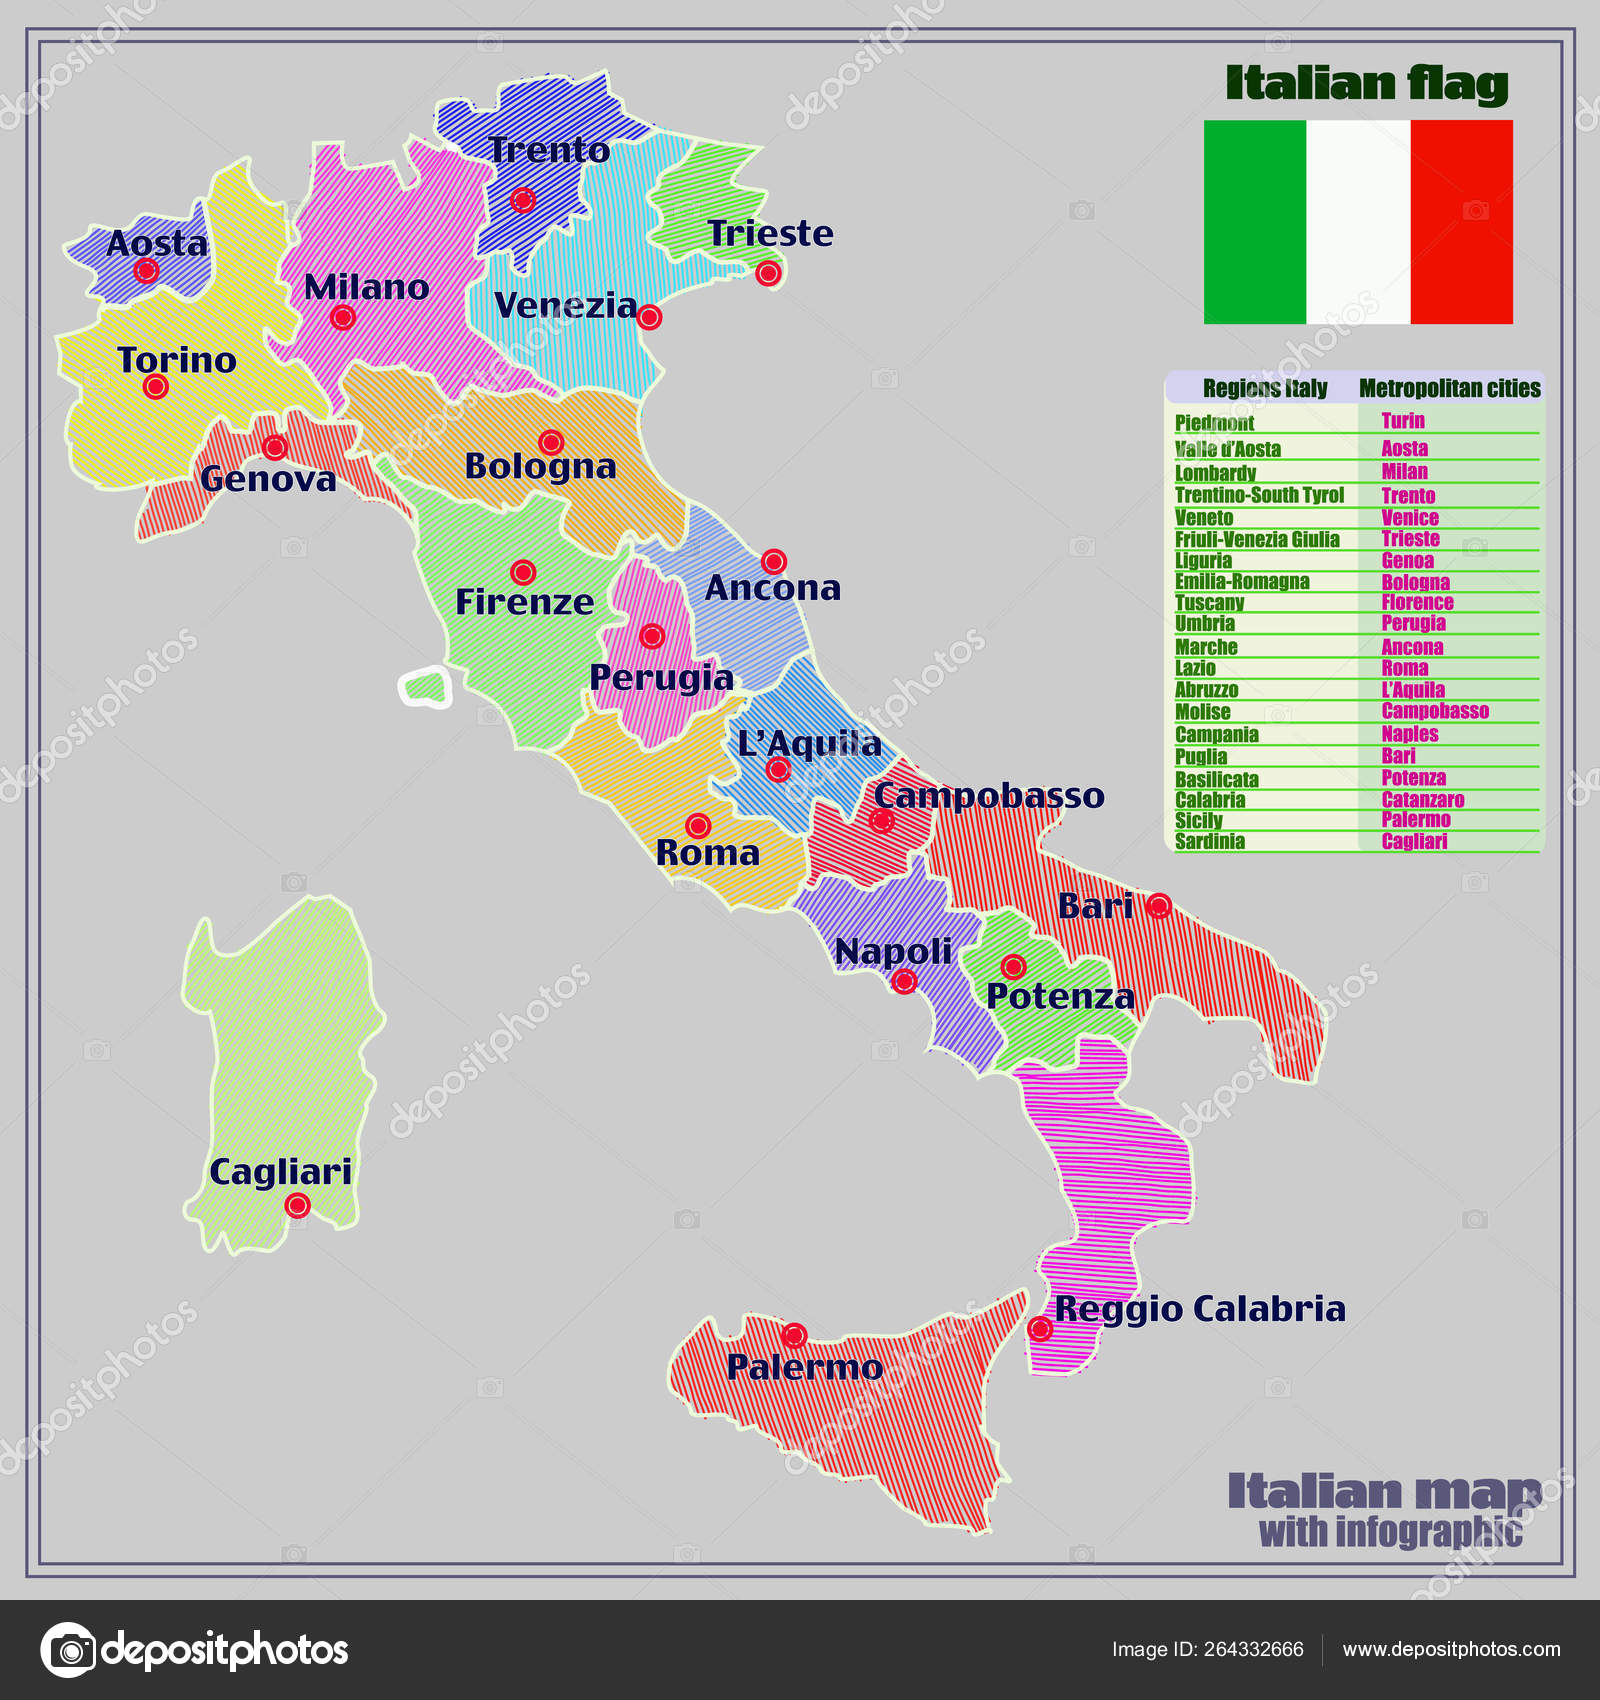 Carte De L Italie Avec Regions Italiennes Et Infographie Image Libre De Droit Par Innabelavi C